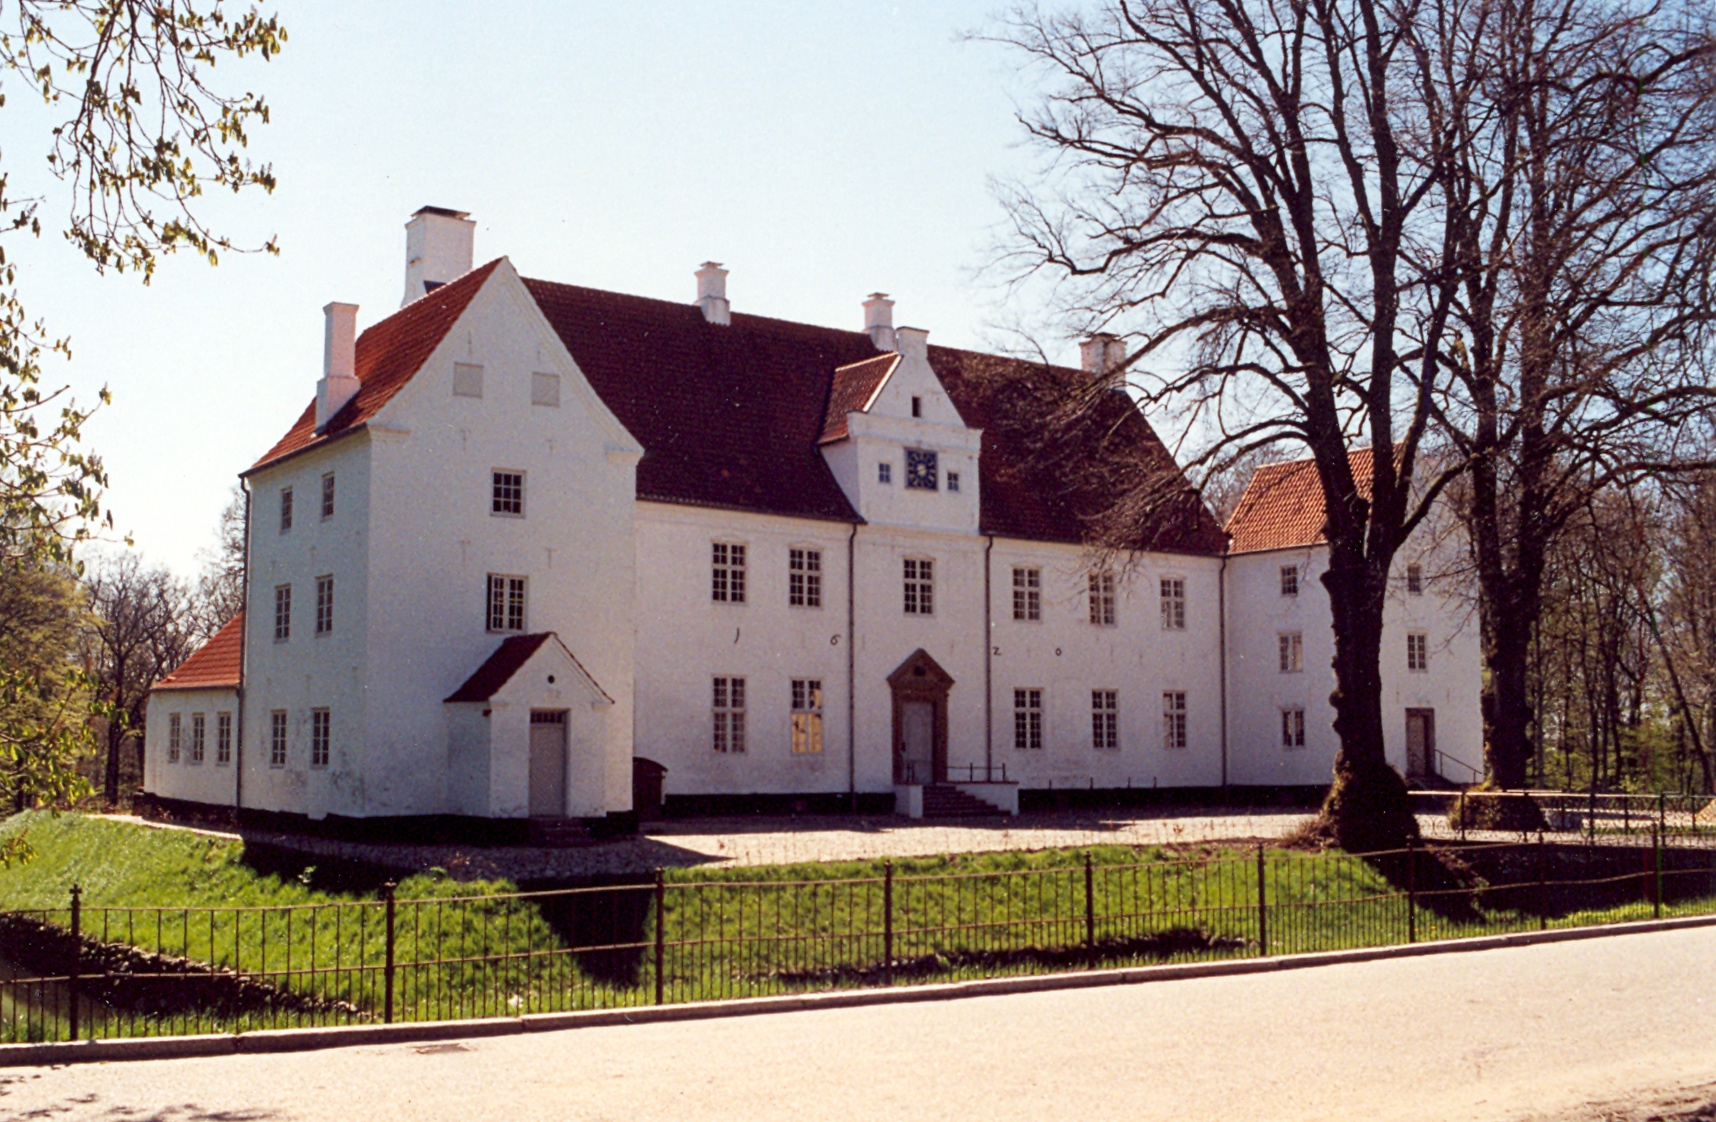 Image 'Sønderskov Castle, Brørup'